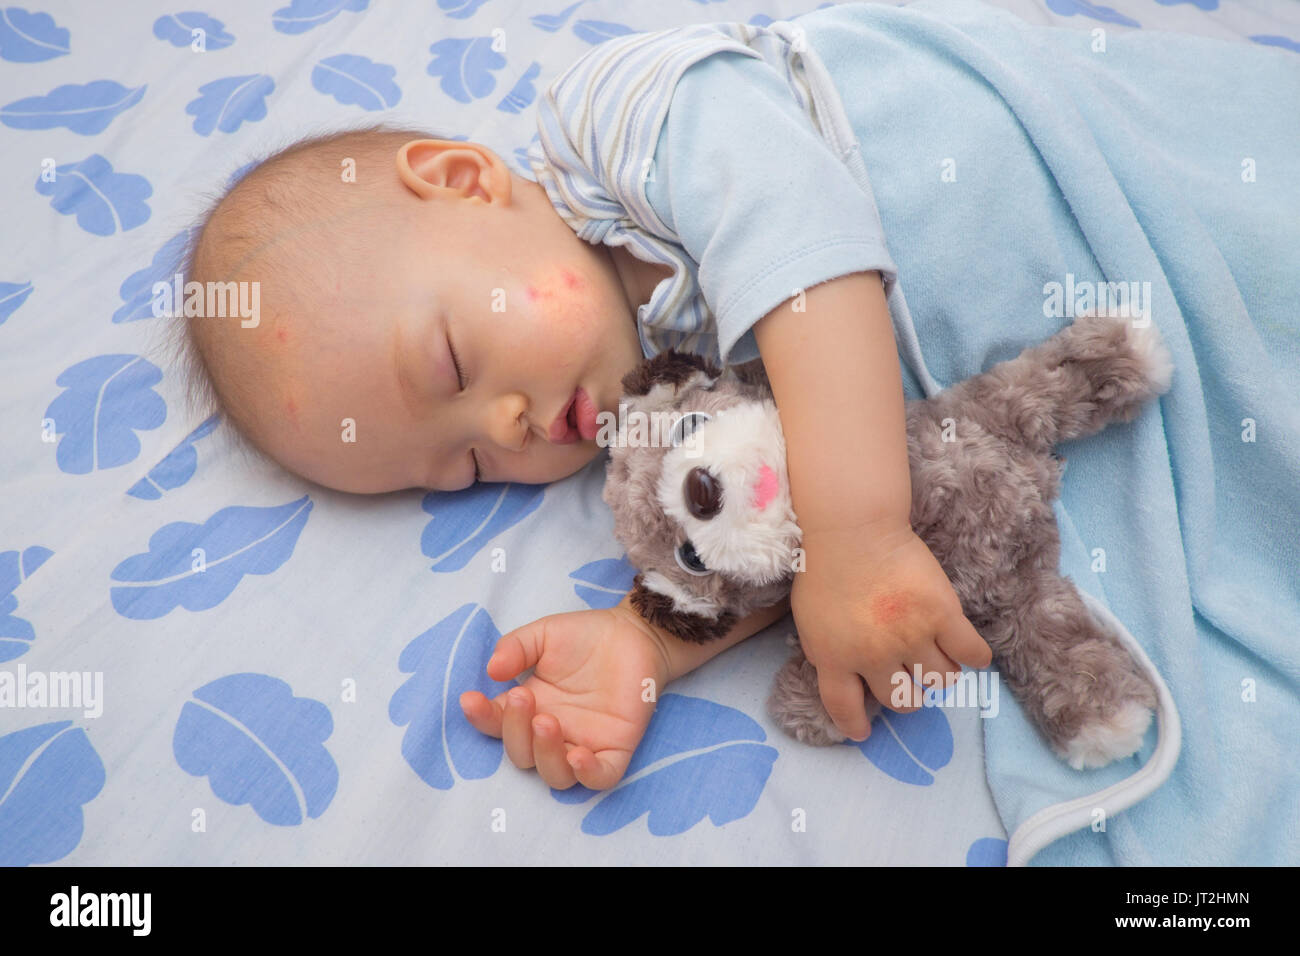 Image bébé asiatique de couchage avec tache rouge à partir de la piqûre de  moustique sur une joue et part, mignon 12 mois bébé garçon prendre une  sieste en maintenant chien jouet